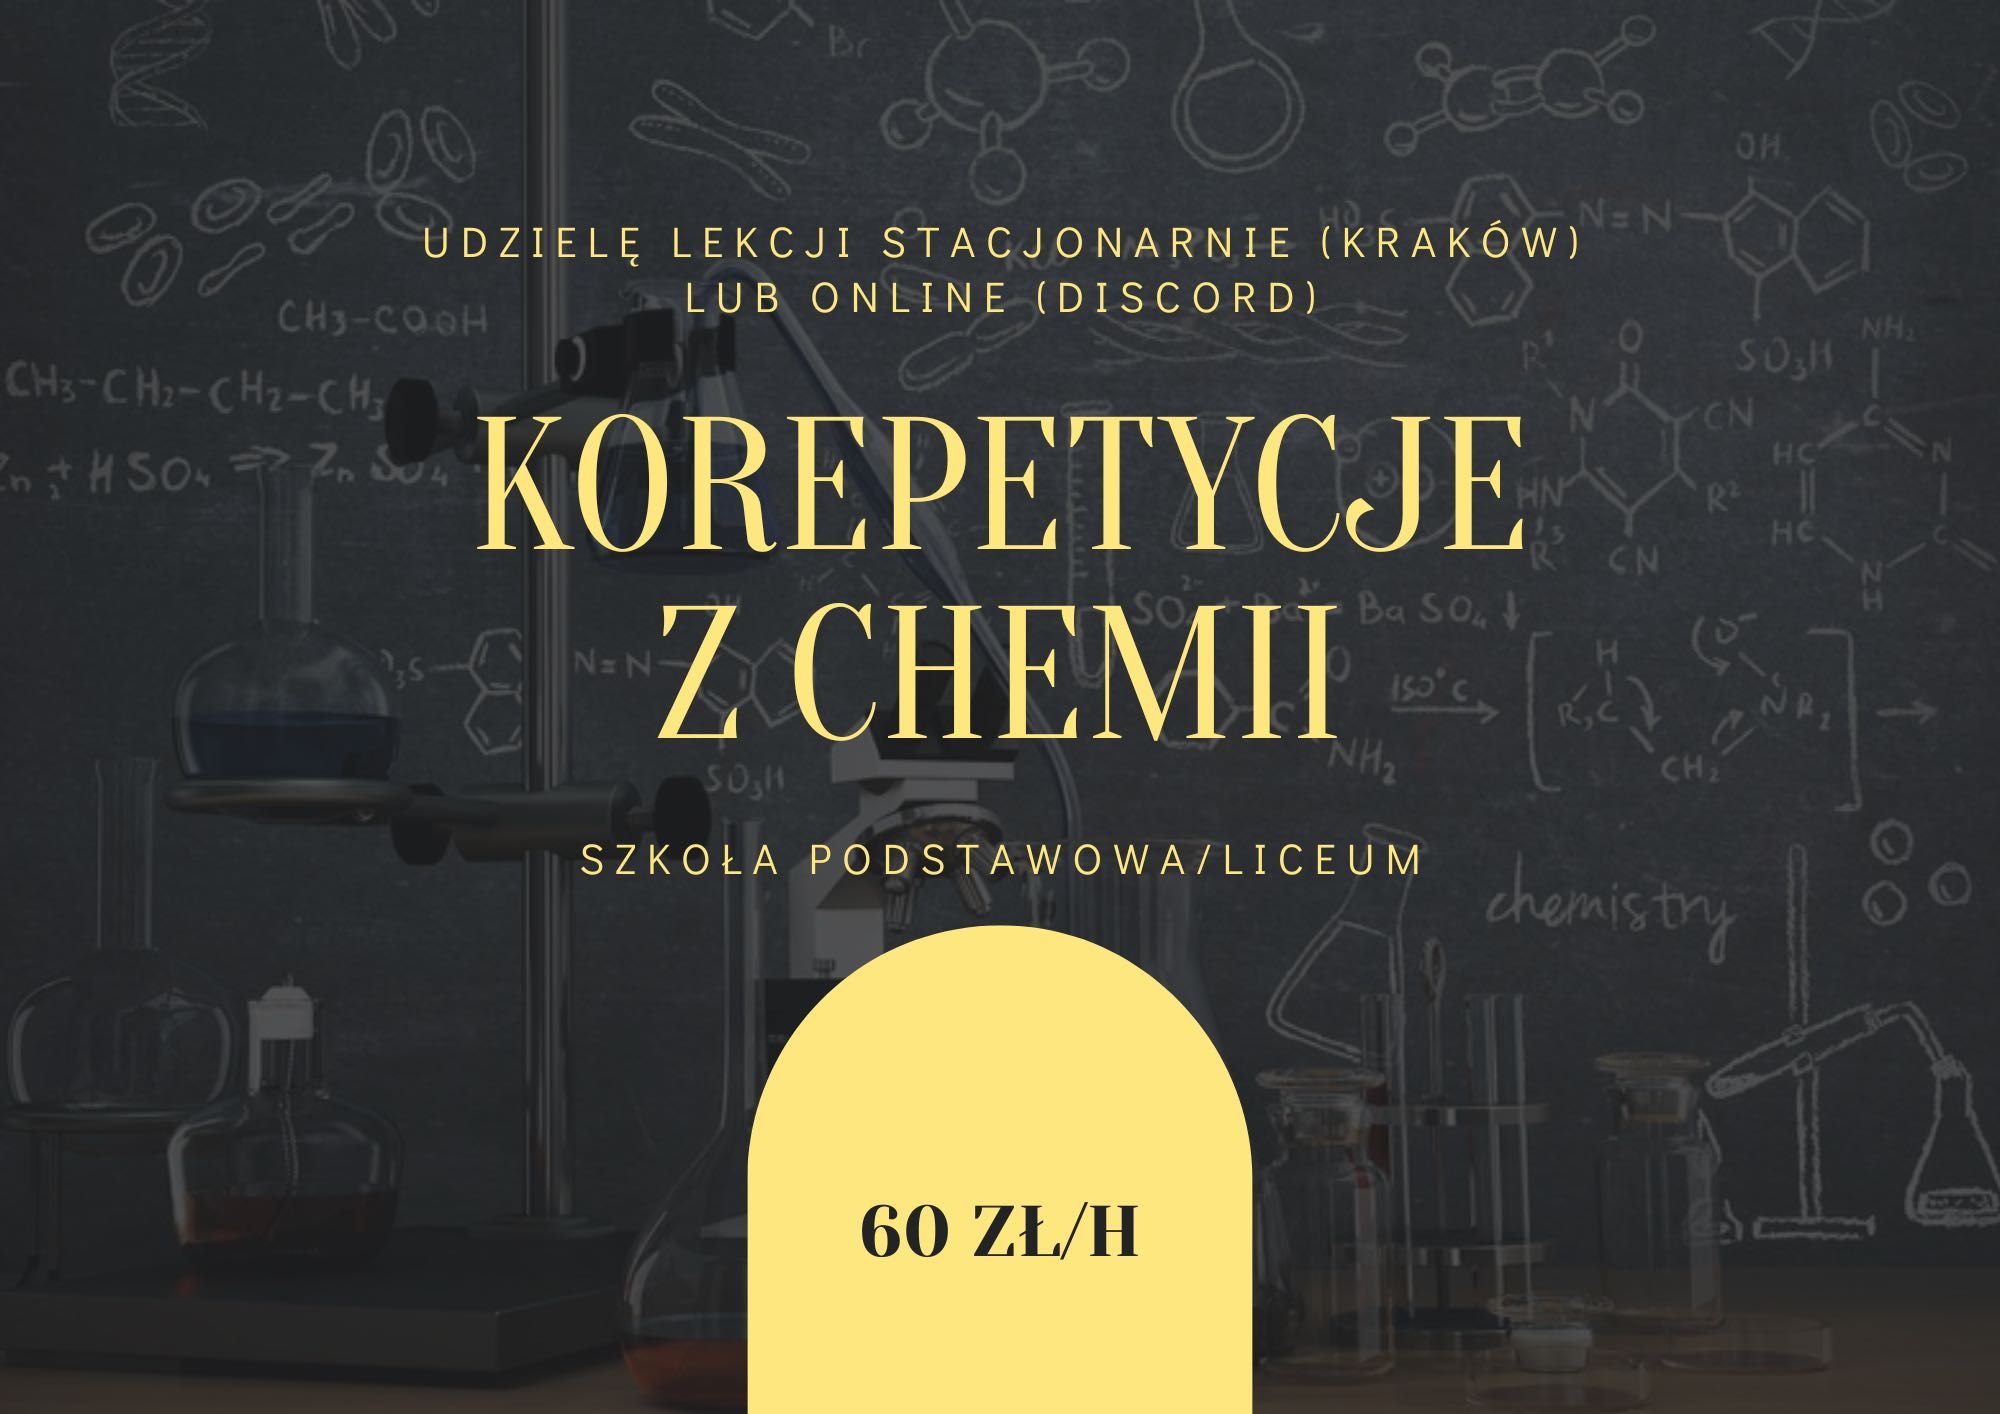 Korepetycje z chemii Kraków szkoła podstawowa/liceum